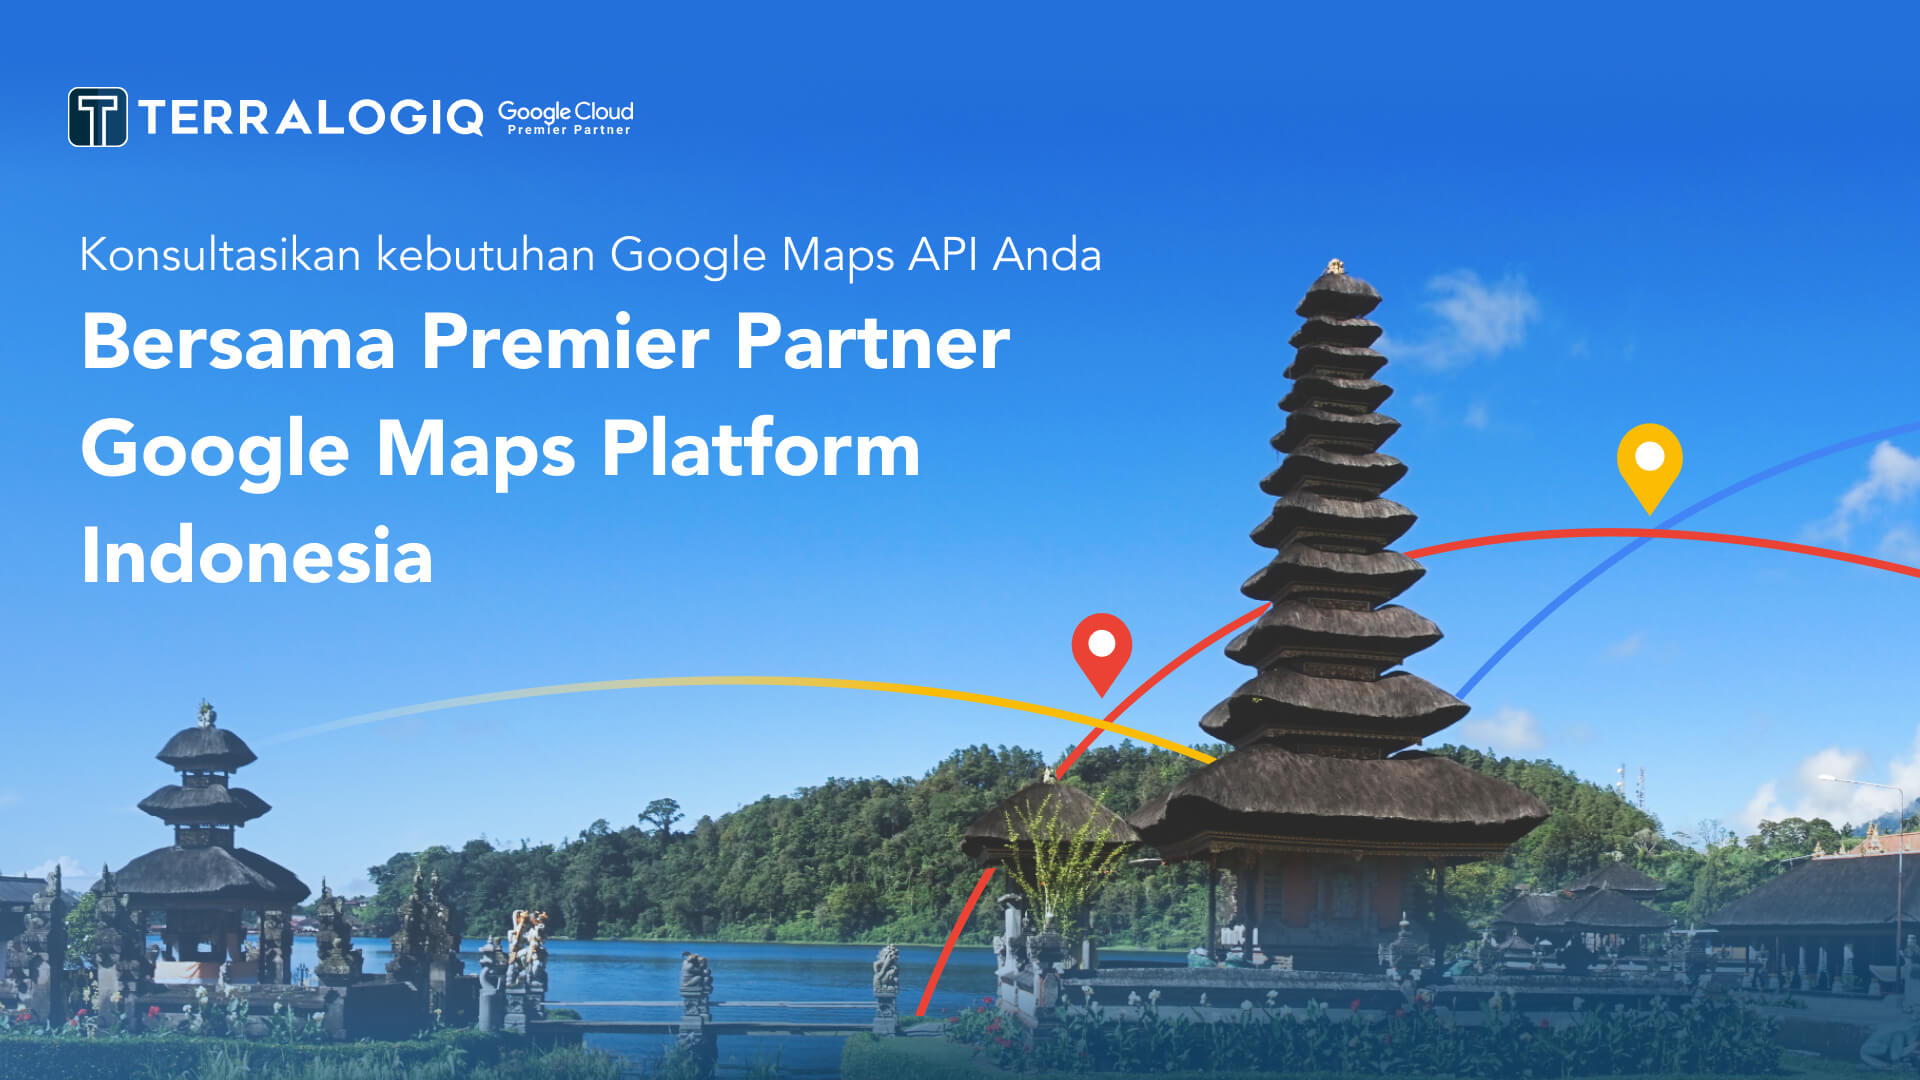 Konsultasikan kebutuhan Google Maps API Anda bersama Premier Partner Google Maps Platform Indonesia